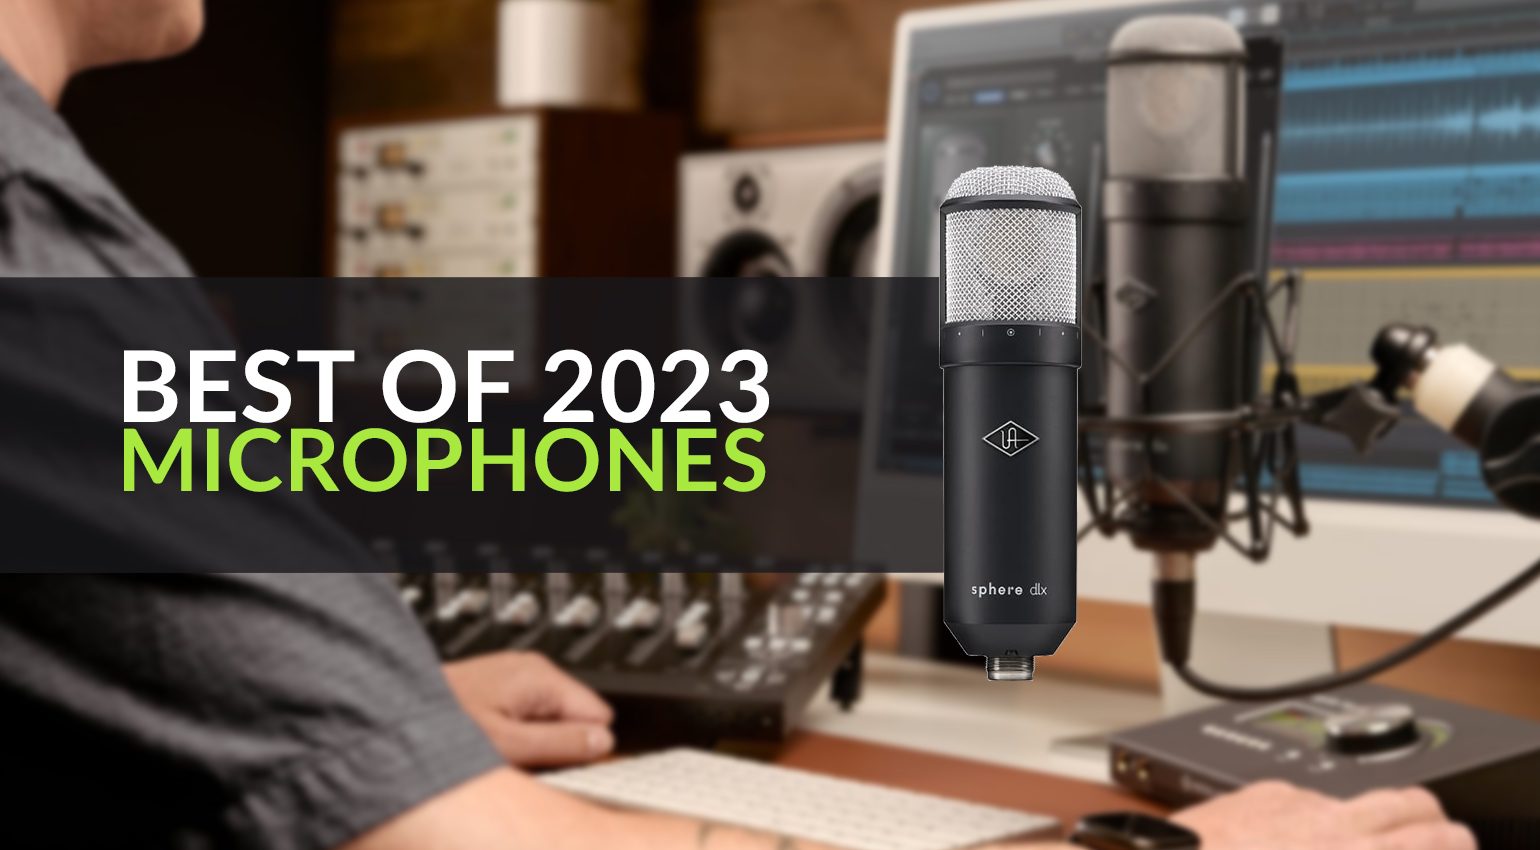 Les meilleurs microphones de 2023 : une année d’innovation en matière d’enregistrement